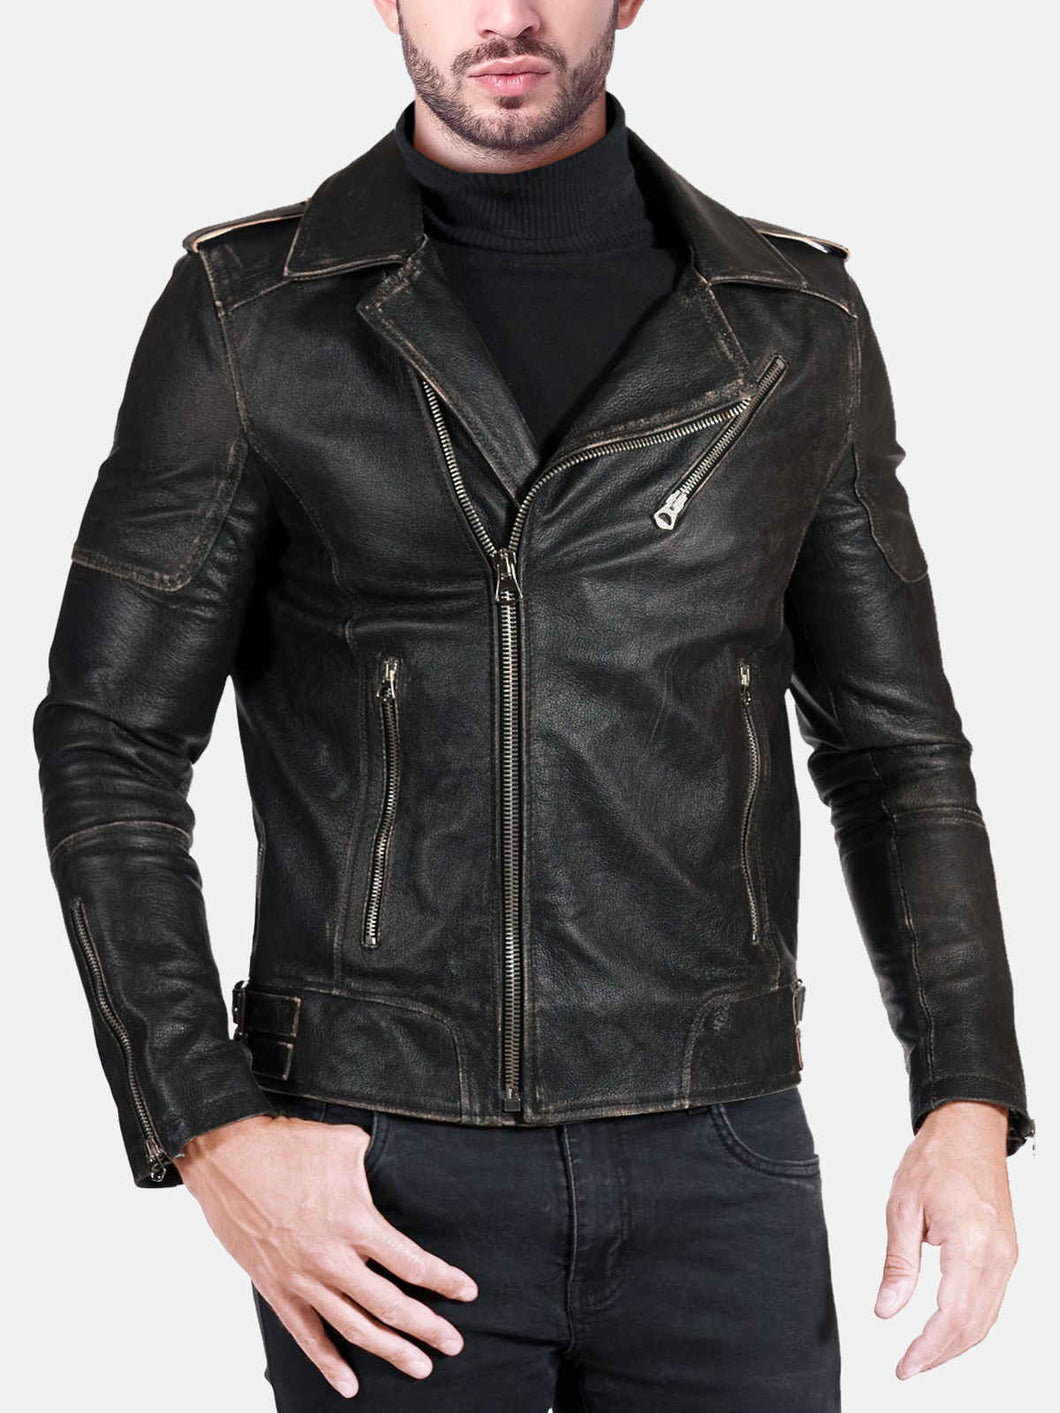 Mens Distressed Vintage Leather Jacket For Men – Boneshia.com